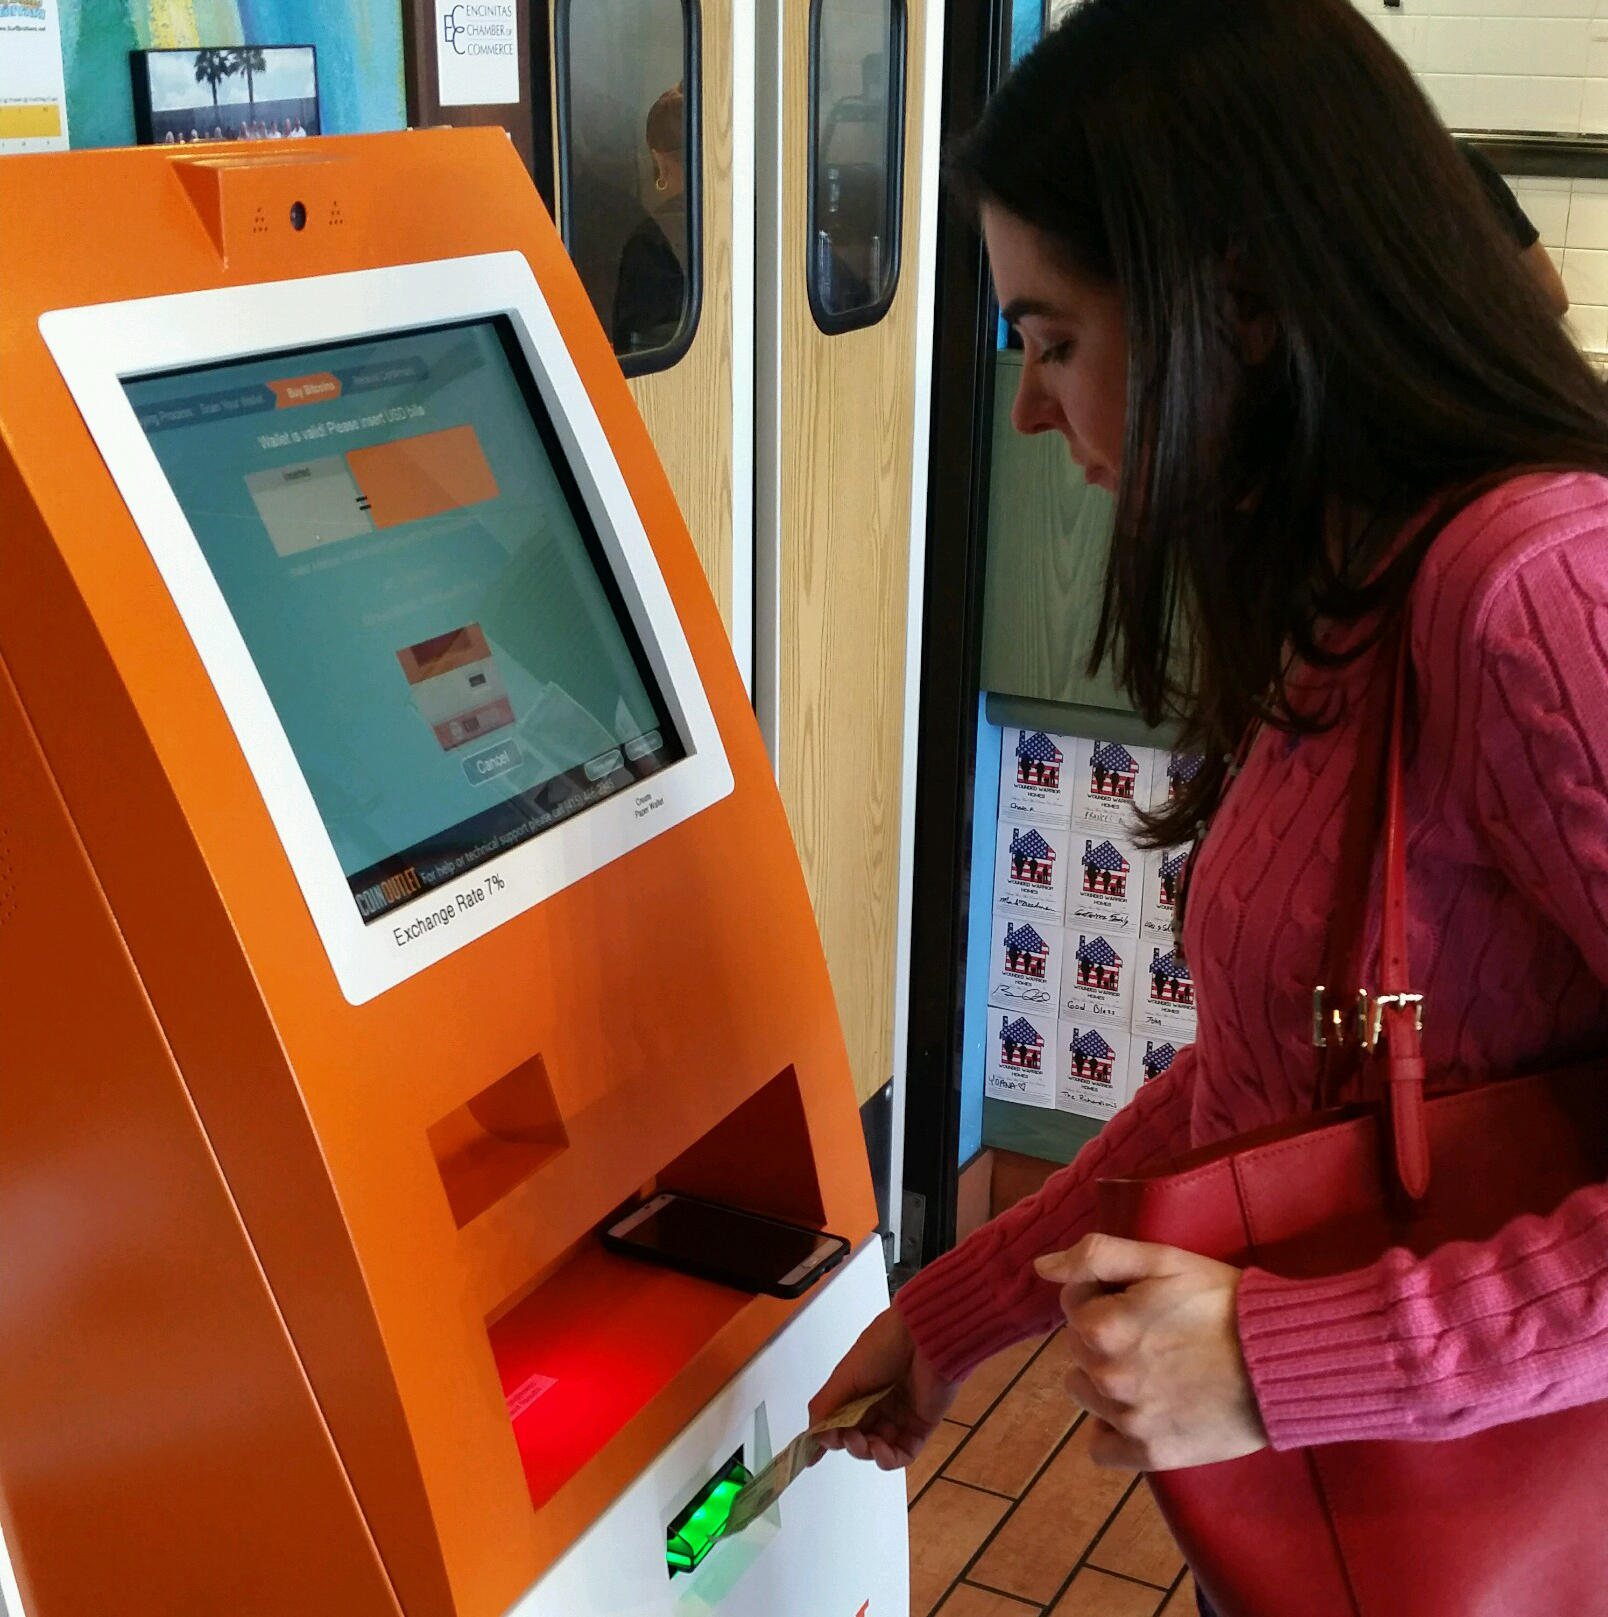 Bitcoin ATM 3